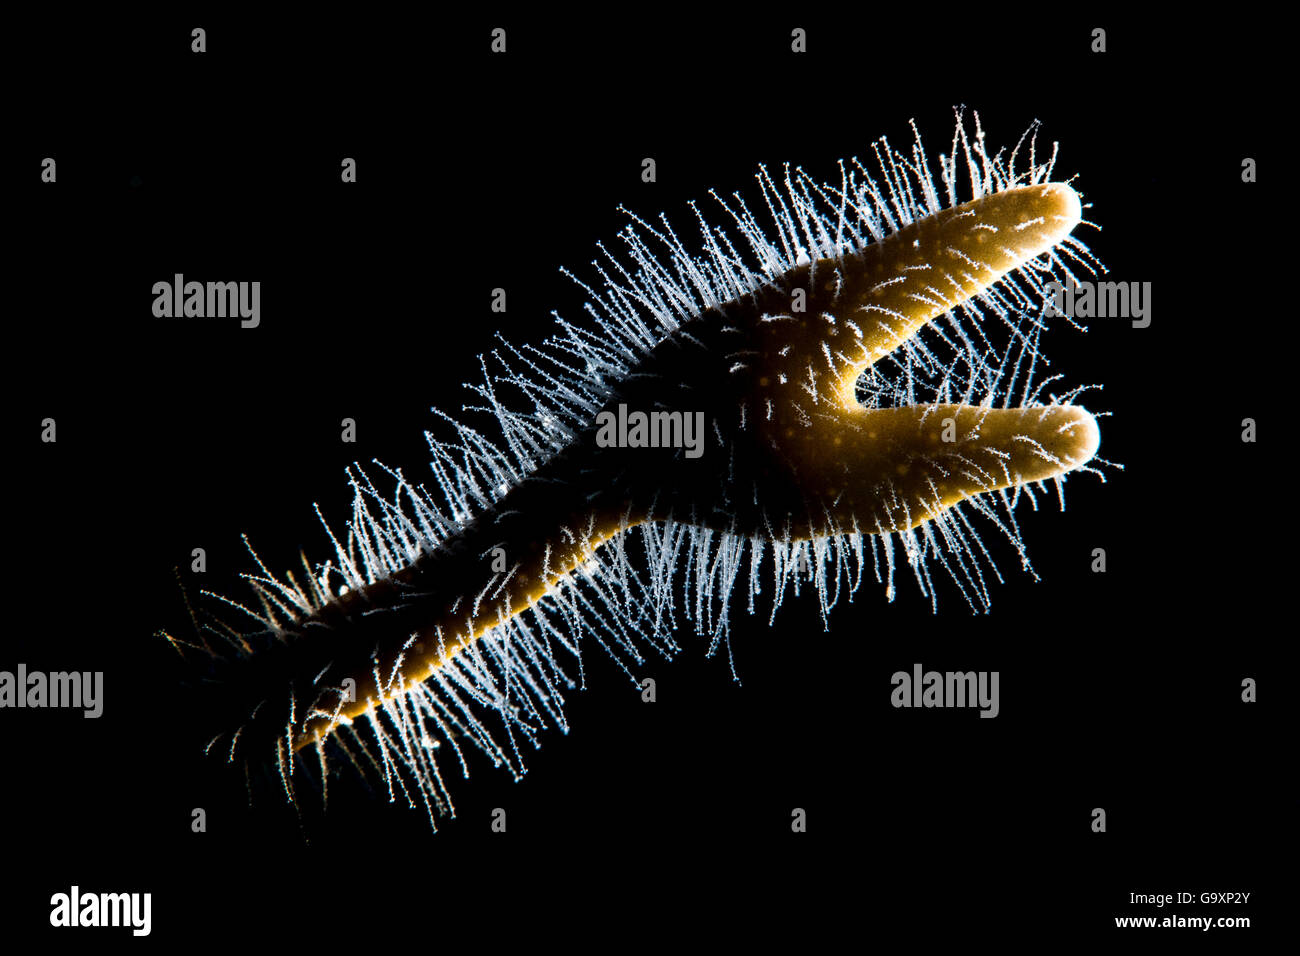 Dettaglio retroilluminato di ramificazione fire coral (Millepora alcicornis) mostra i capelli come polipi, riempito con le nematocisti urticante. Ea Foto Stock